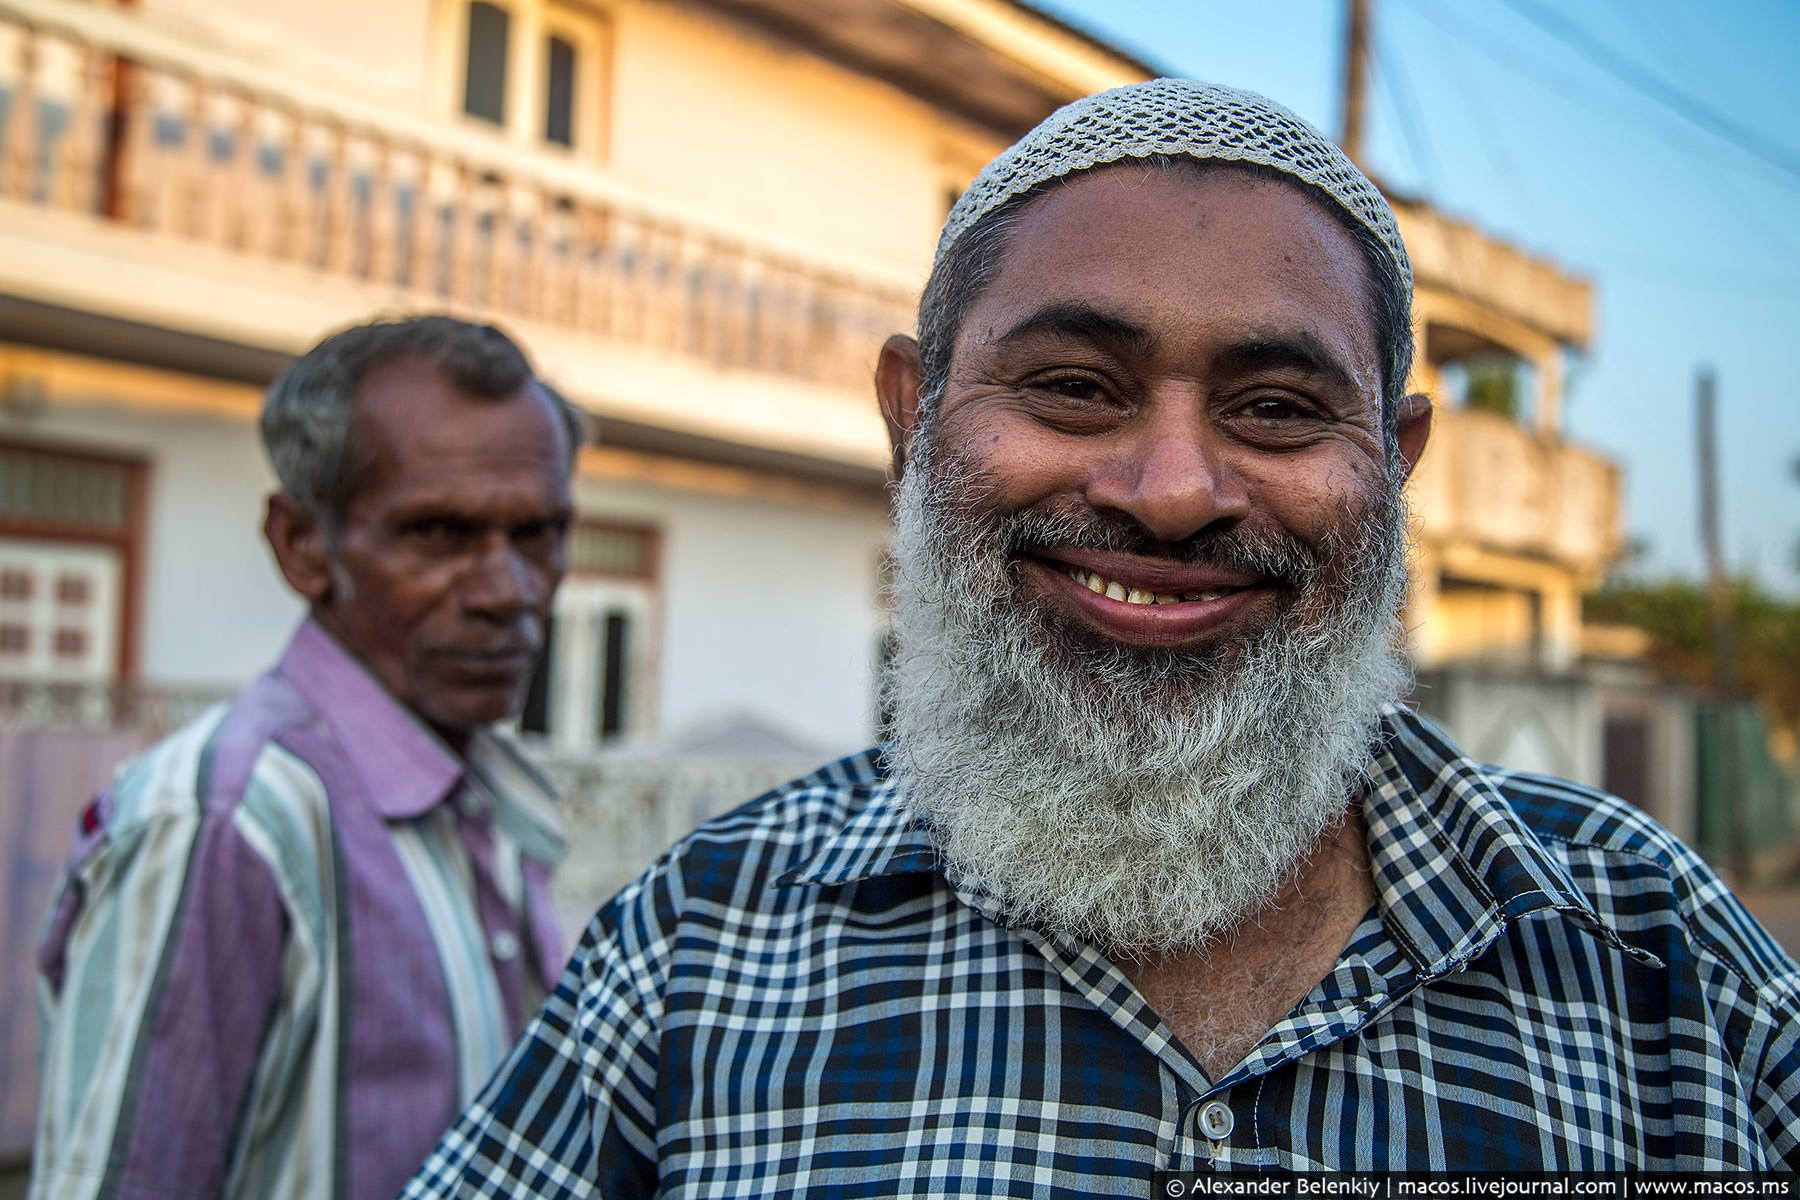 Що ховається за мусульманською посмішкою?